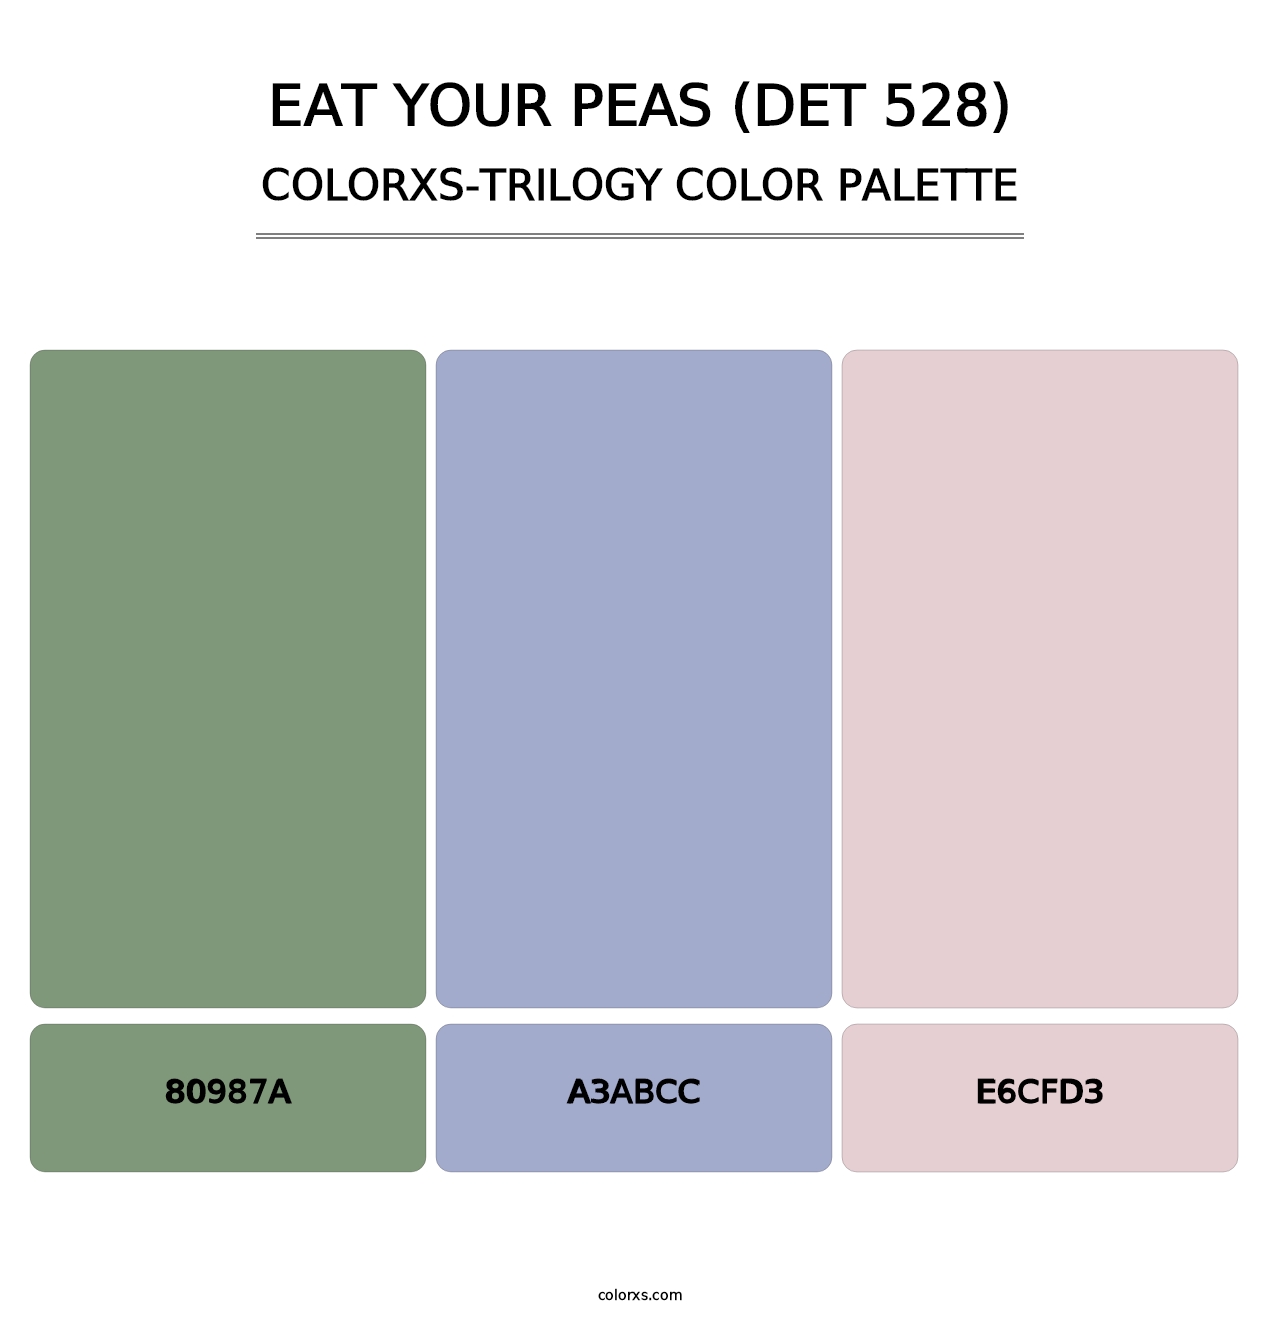 Eat Your Peas (DET 528) - Colorxs Trilogy Palette